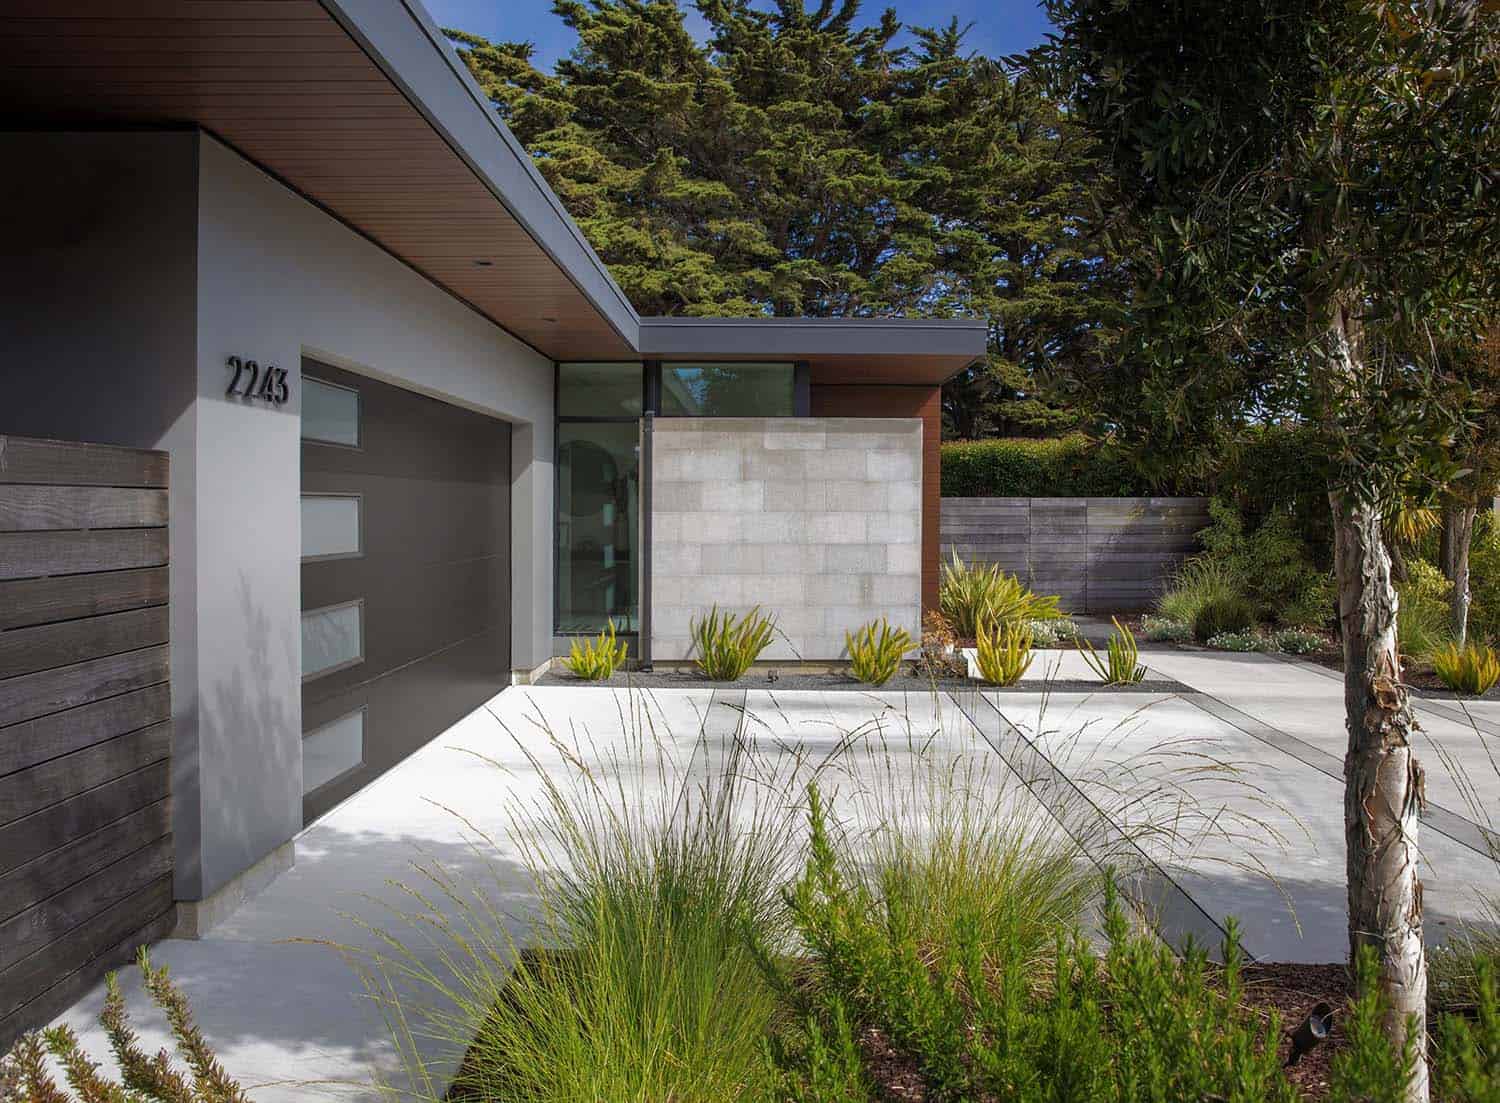 modern contemporary home exterior